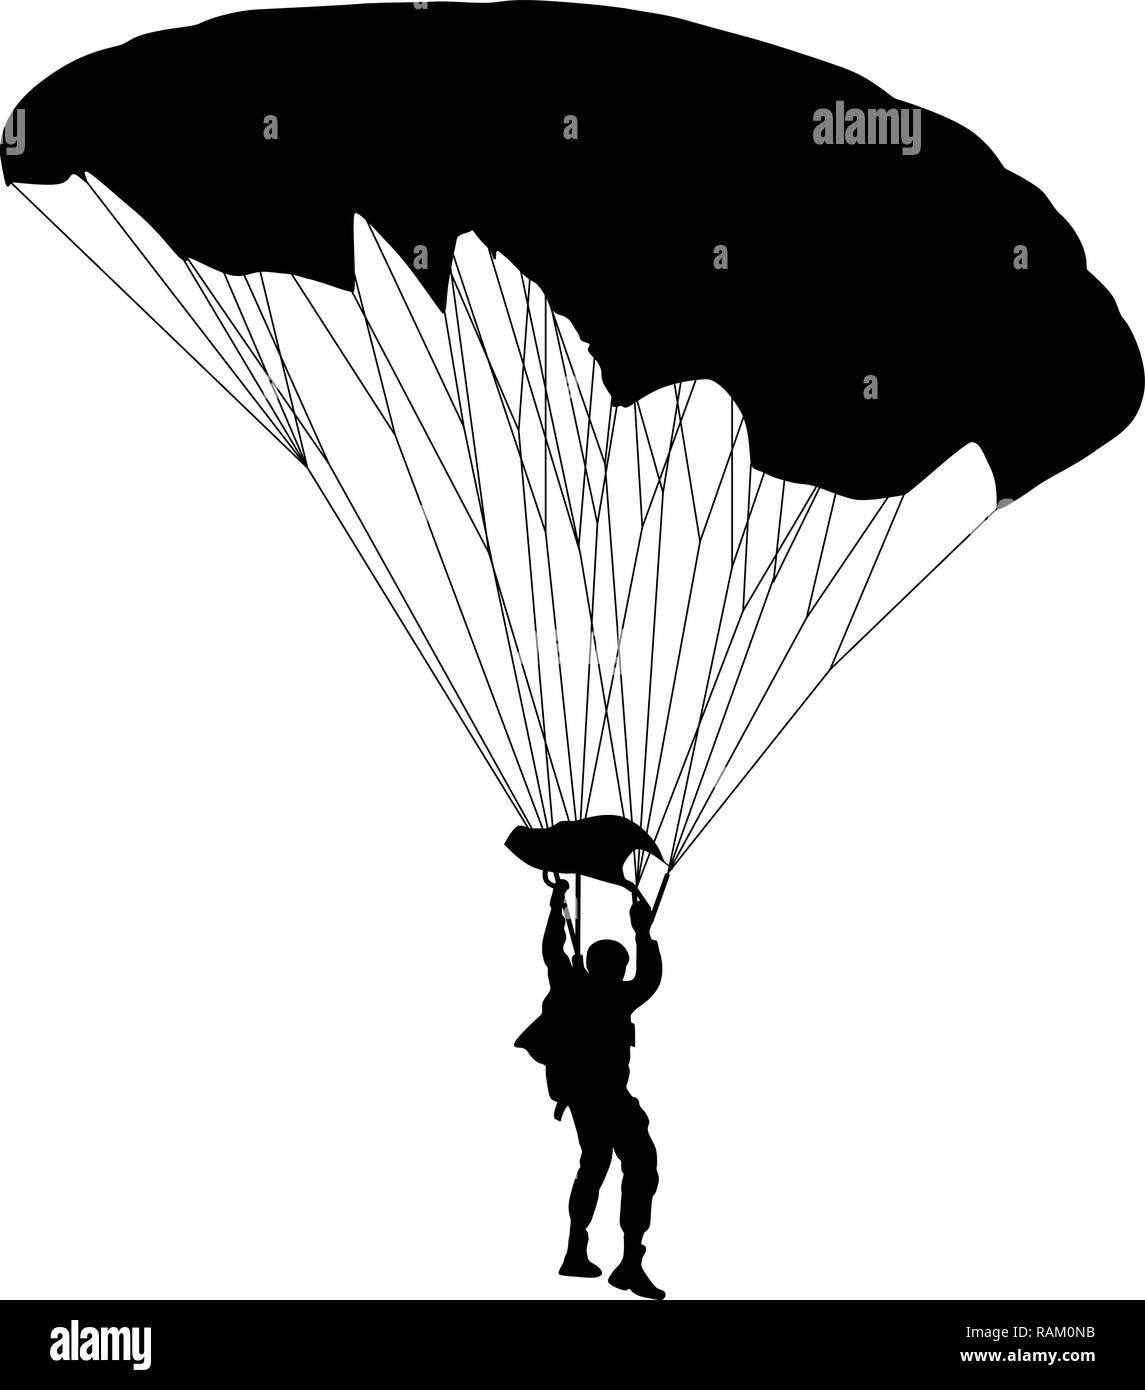 Fallschirmspringer silhouette Vektor Stock Vektor